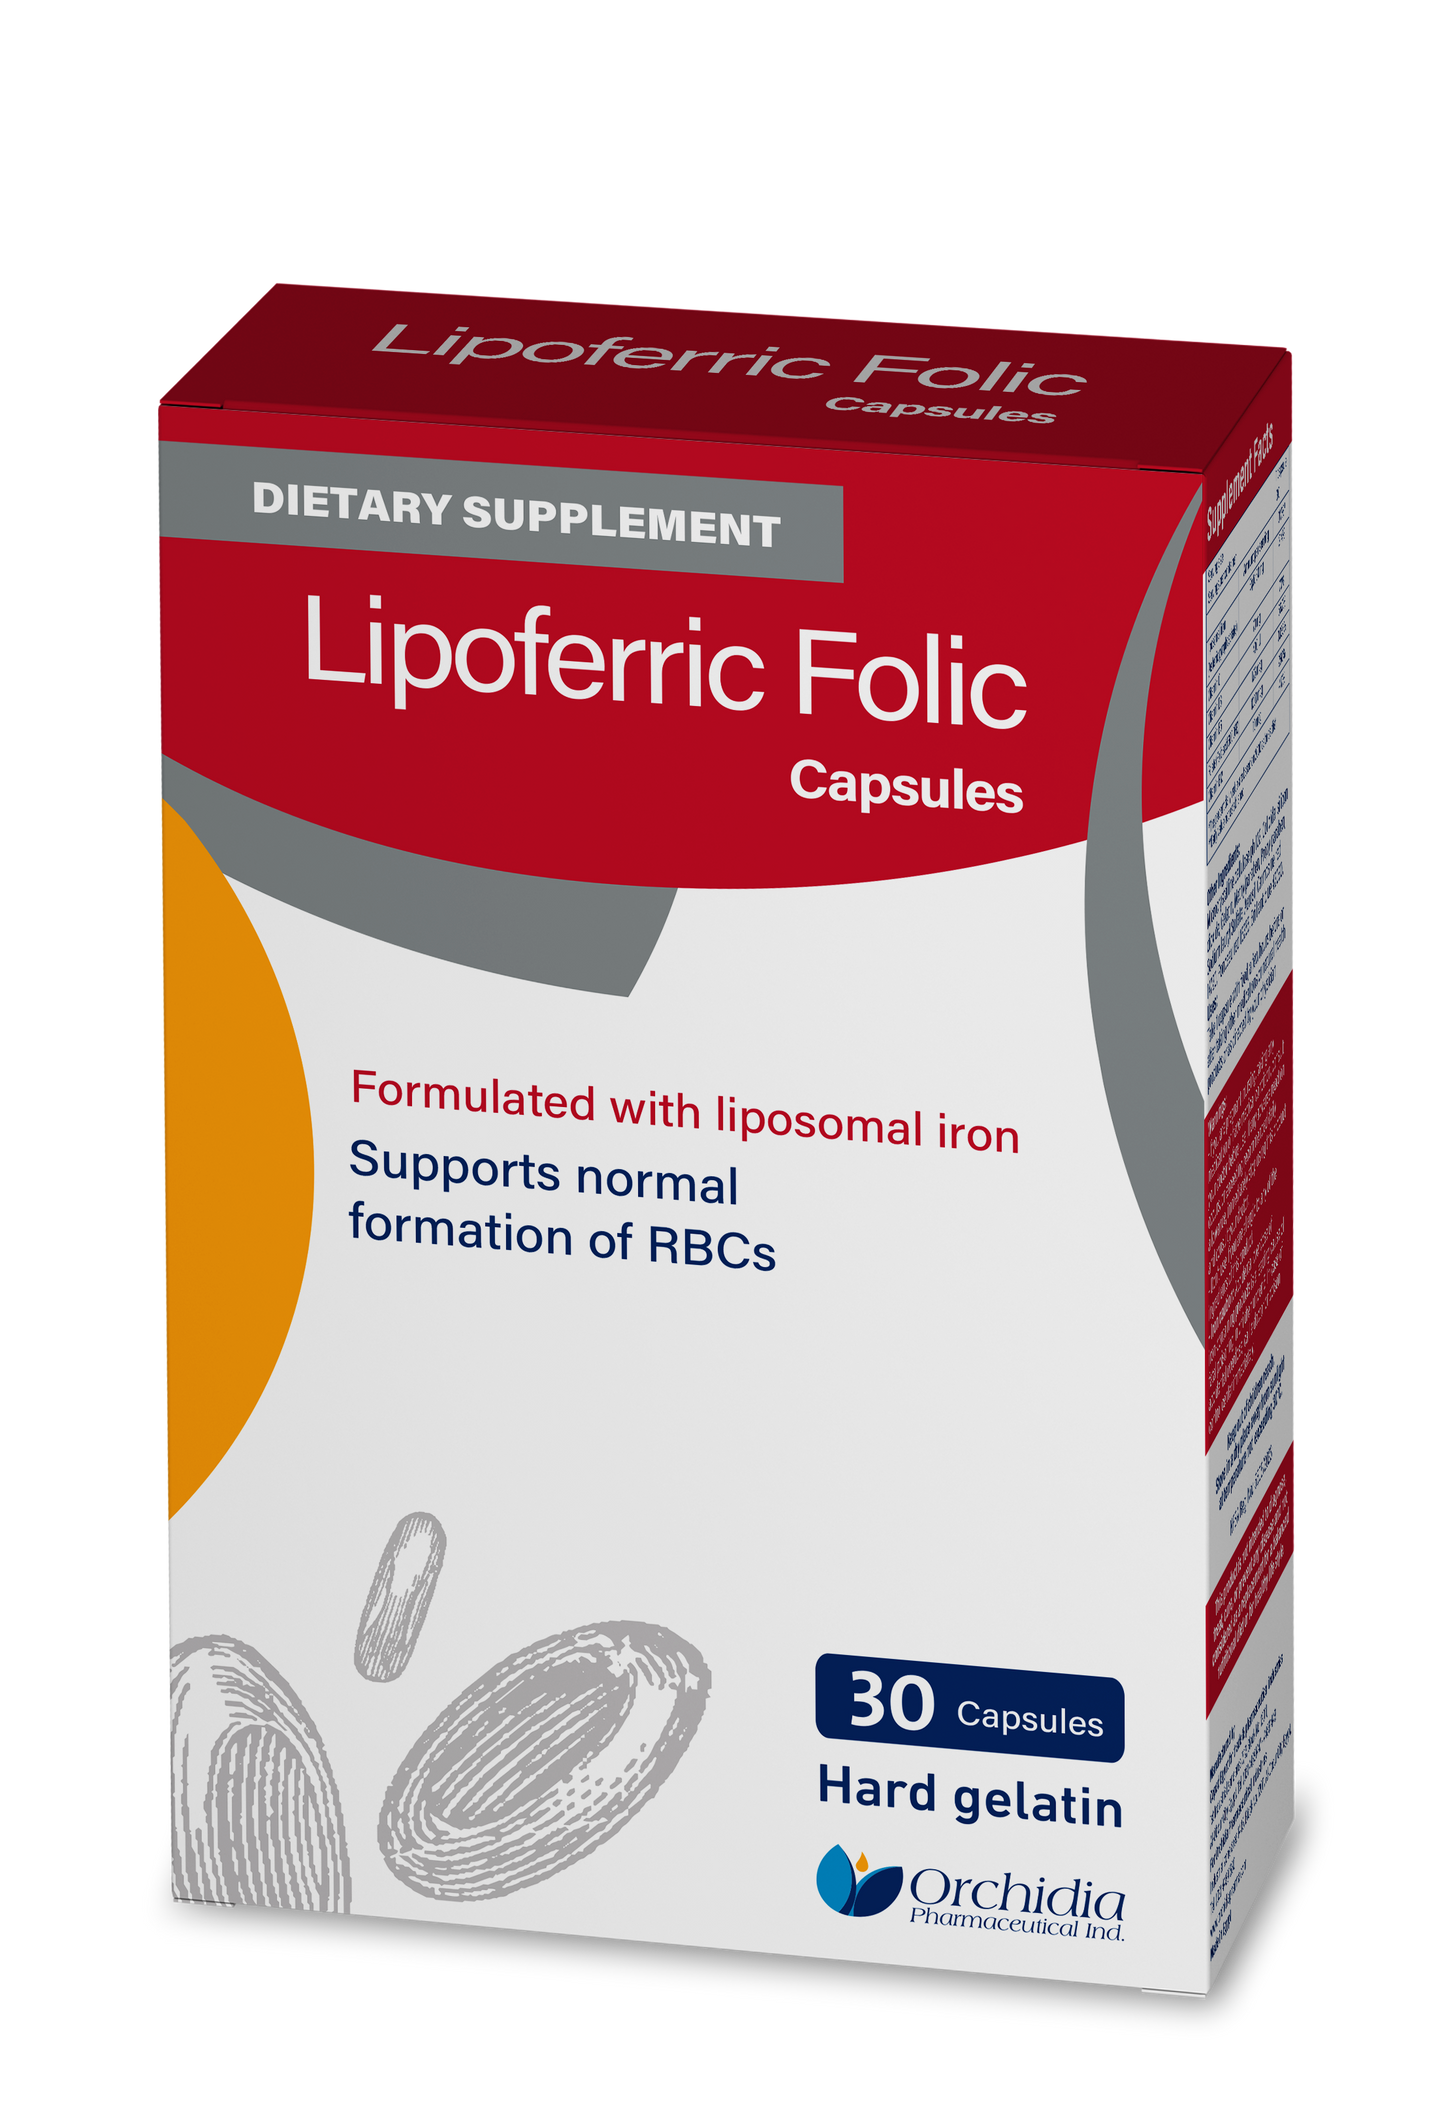 Lipoferric Folic Capsules